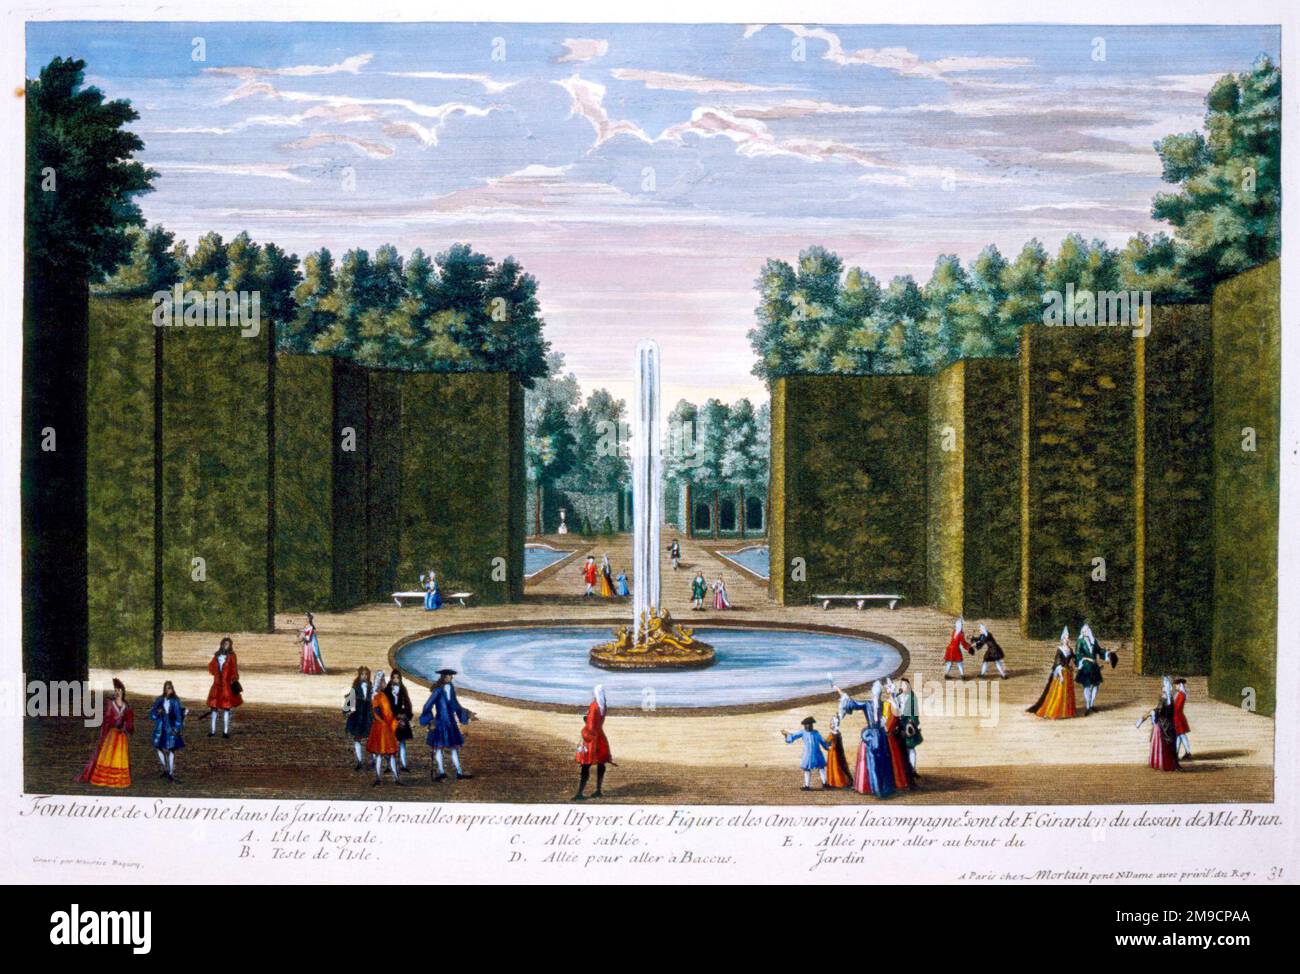 Fontaine de Saturne - Château de Versailles, France Banque D'Images